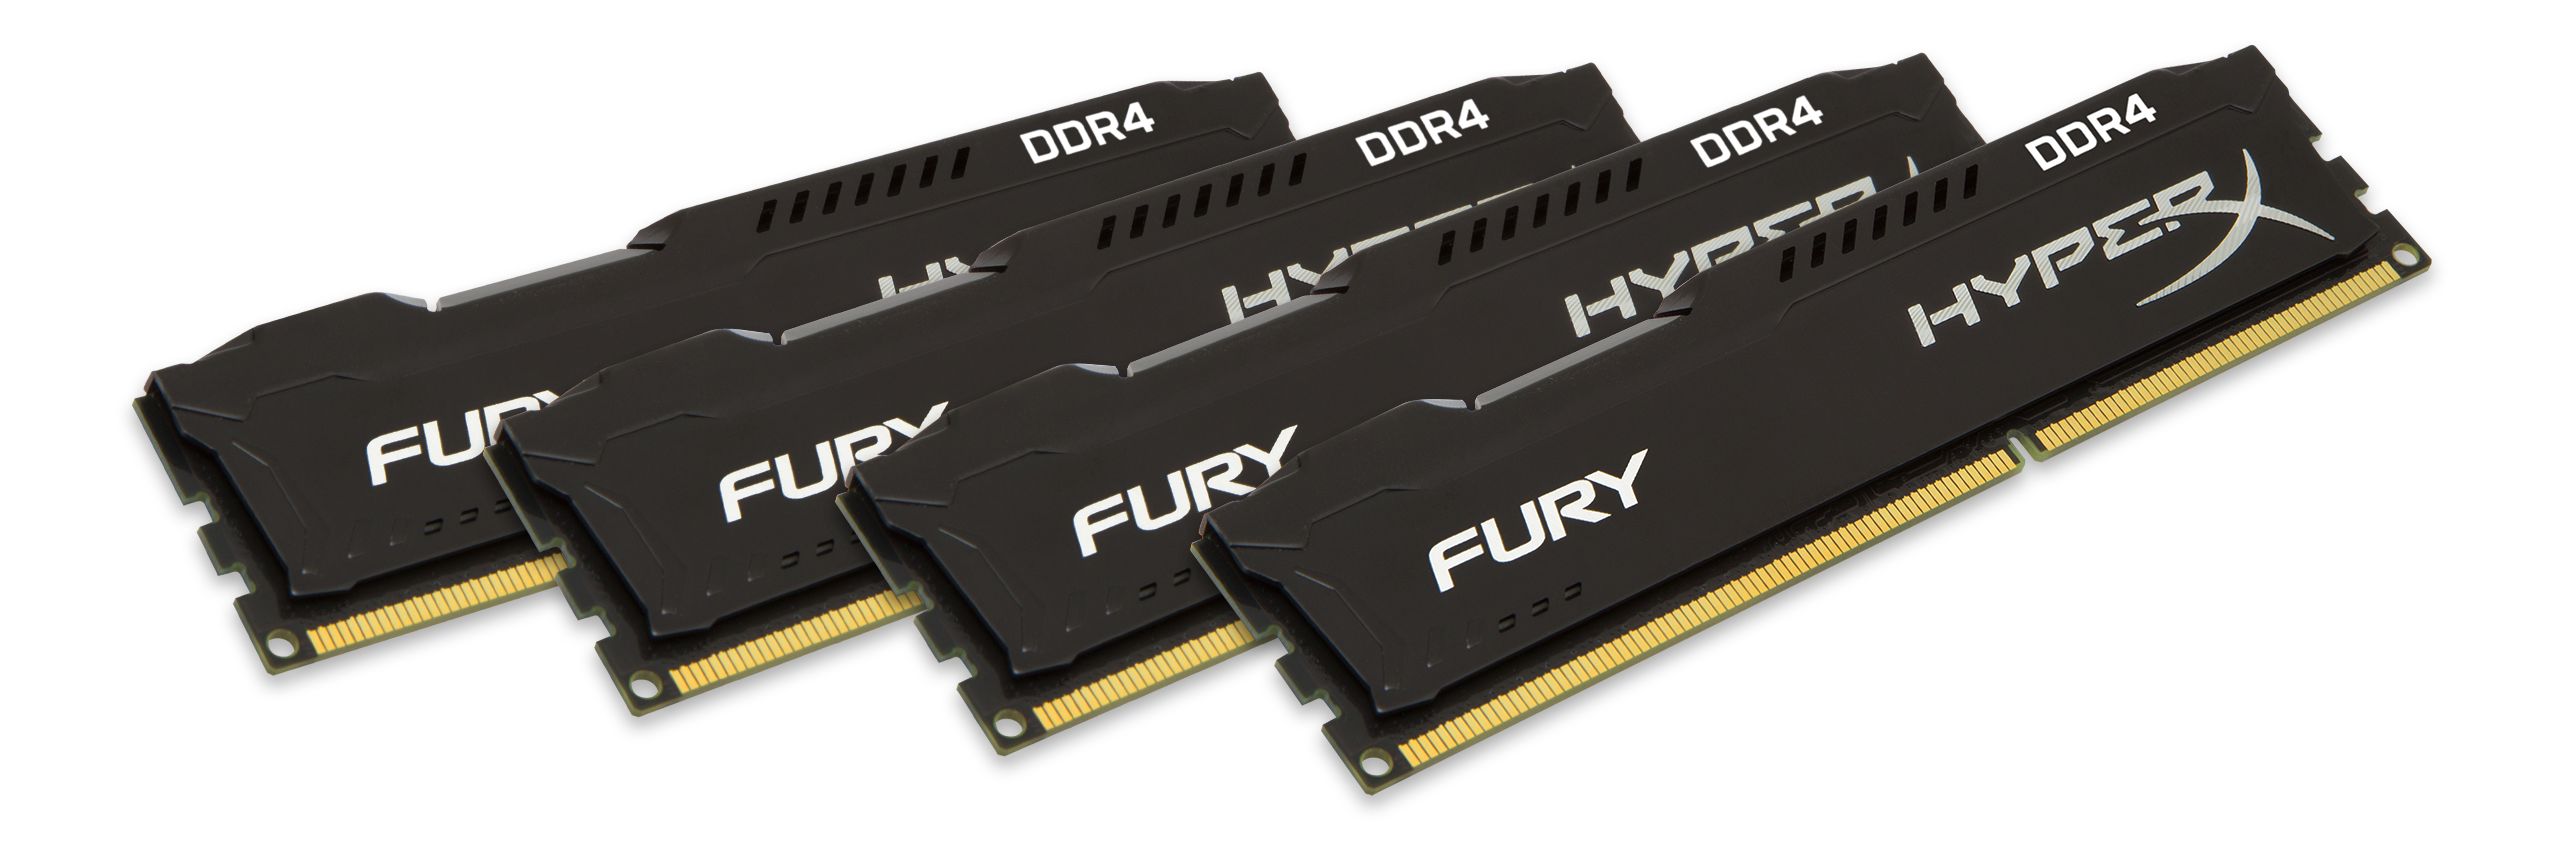 32 gb ram. Kingston HYPERX Fury ddr4 8gb 2400. Оперативная память 32гб HYPERX. HYPERX Fury Black ddr4 4x32gb. HYPERX Fury 64gb (4x16 GB Kit) ddr4, 2133 MHZ.